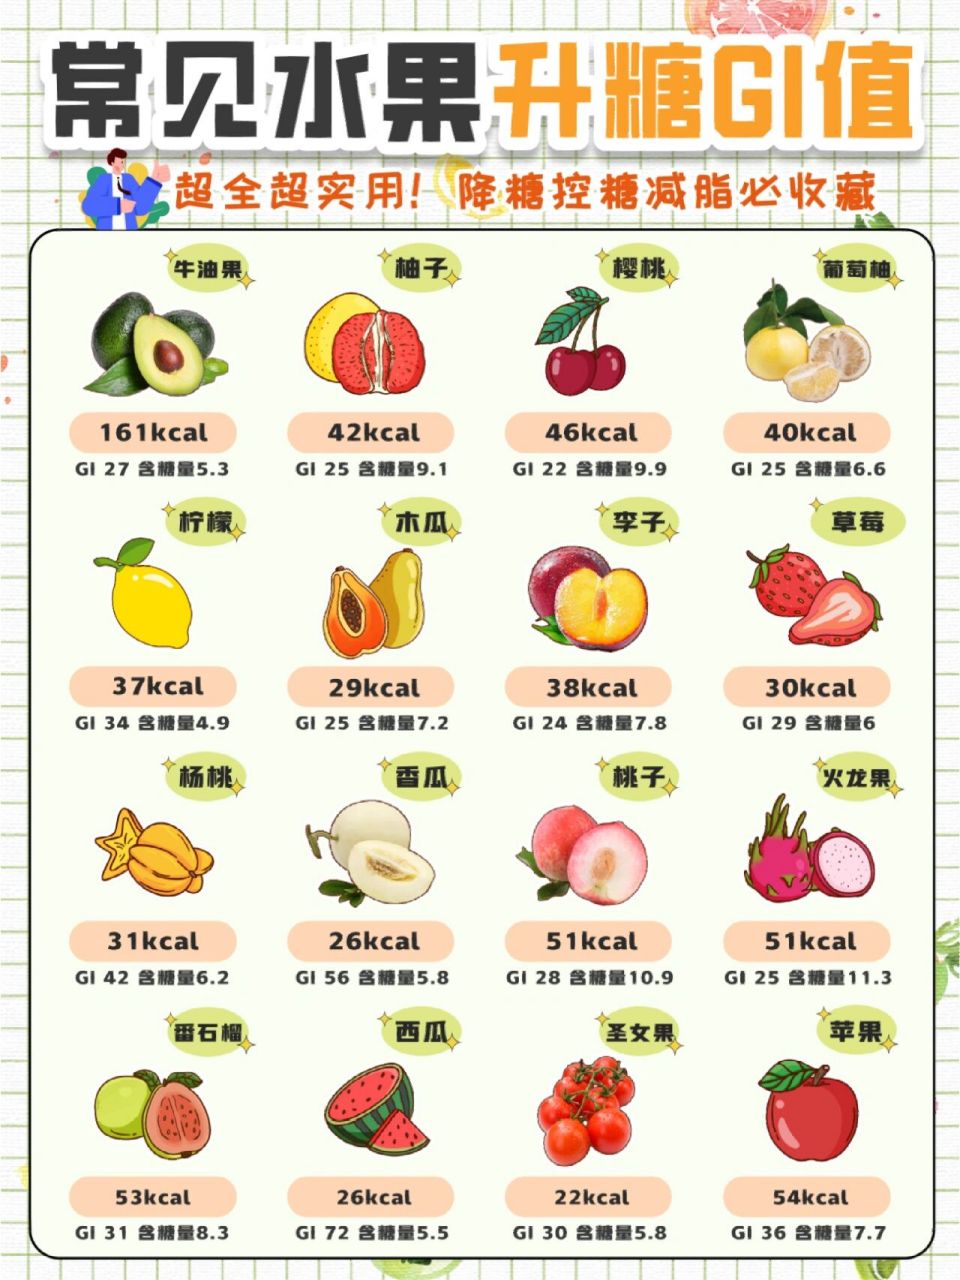 升糖指数水果对照表图片